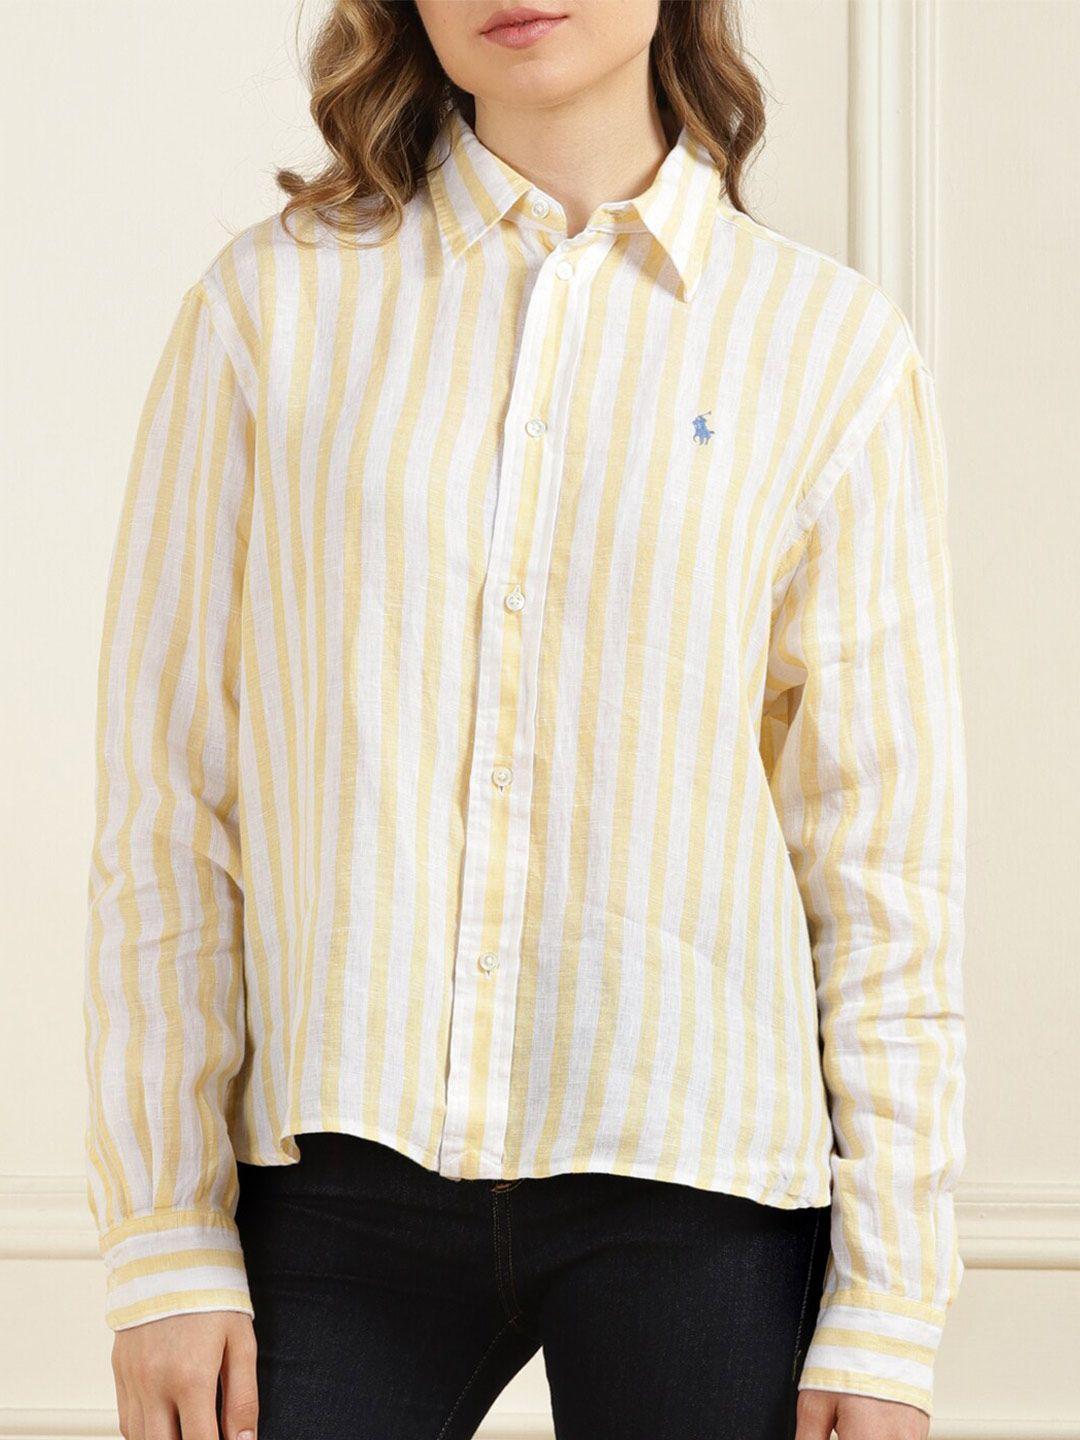 polo ralph lauren vertical striped linen shirt